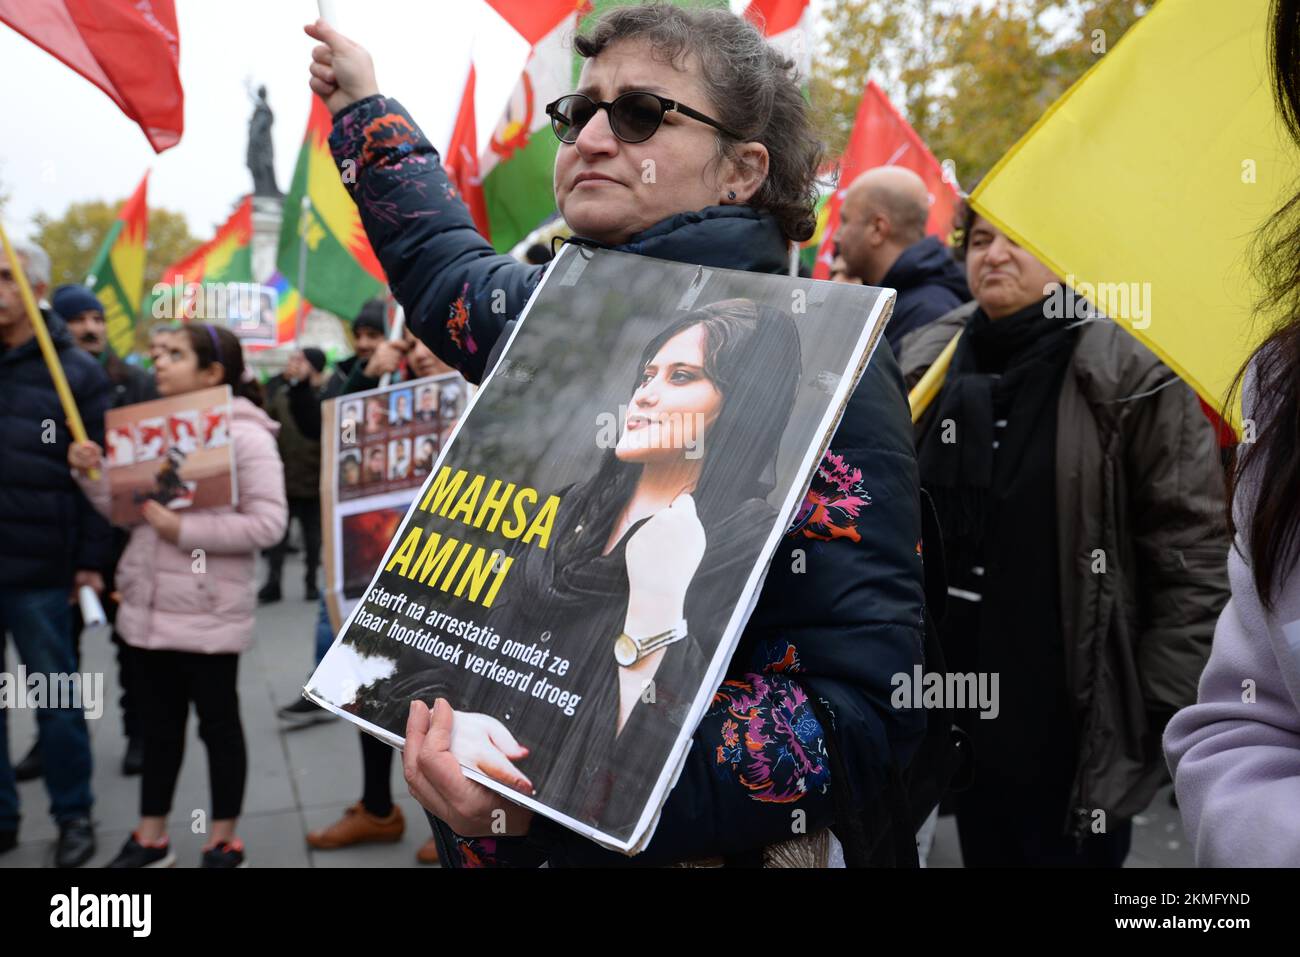 Jin JIyan Azadi , mouvement de protestement à Paris contre le régime islamique autoritaire Iranien, qui réprime et mar les opposants Foto Stock